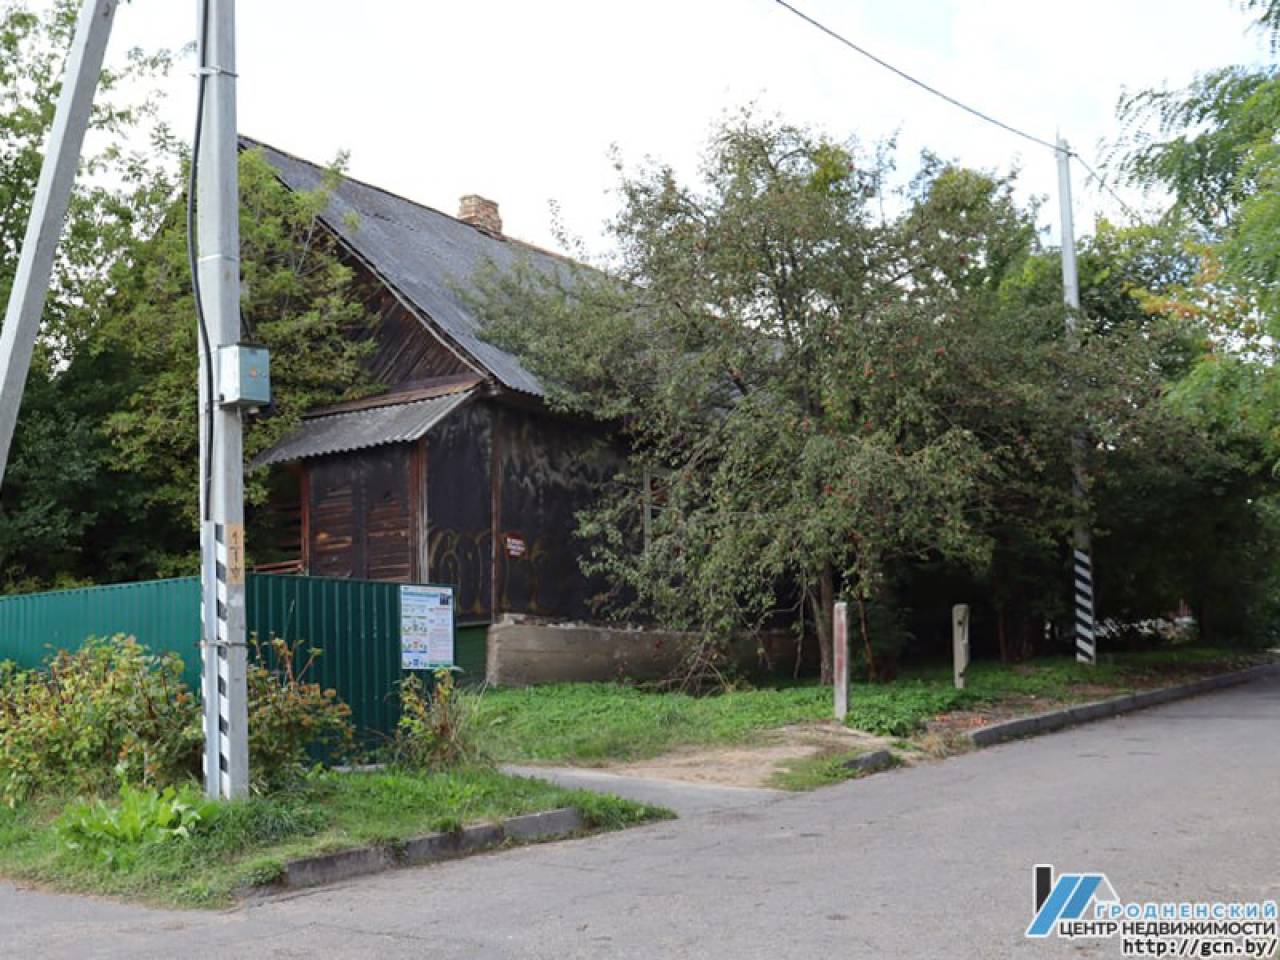 За кинотеатром «Космос» в Гродно хотят снести два частных дома, чтобы построить многоэтажку